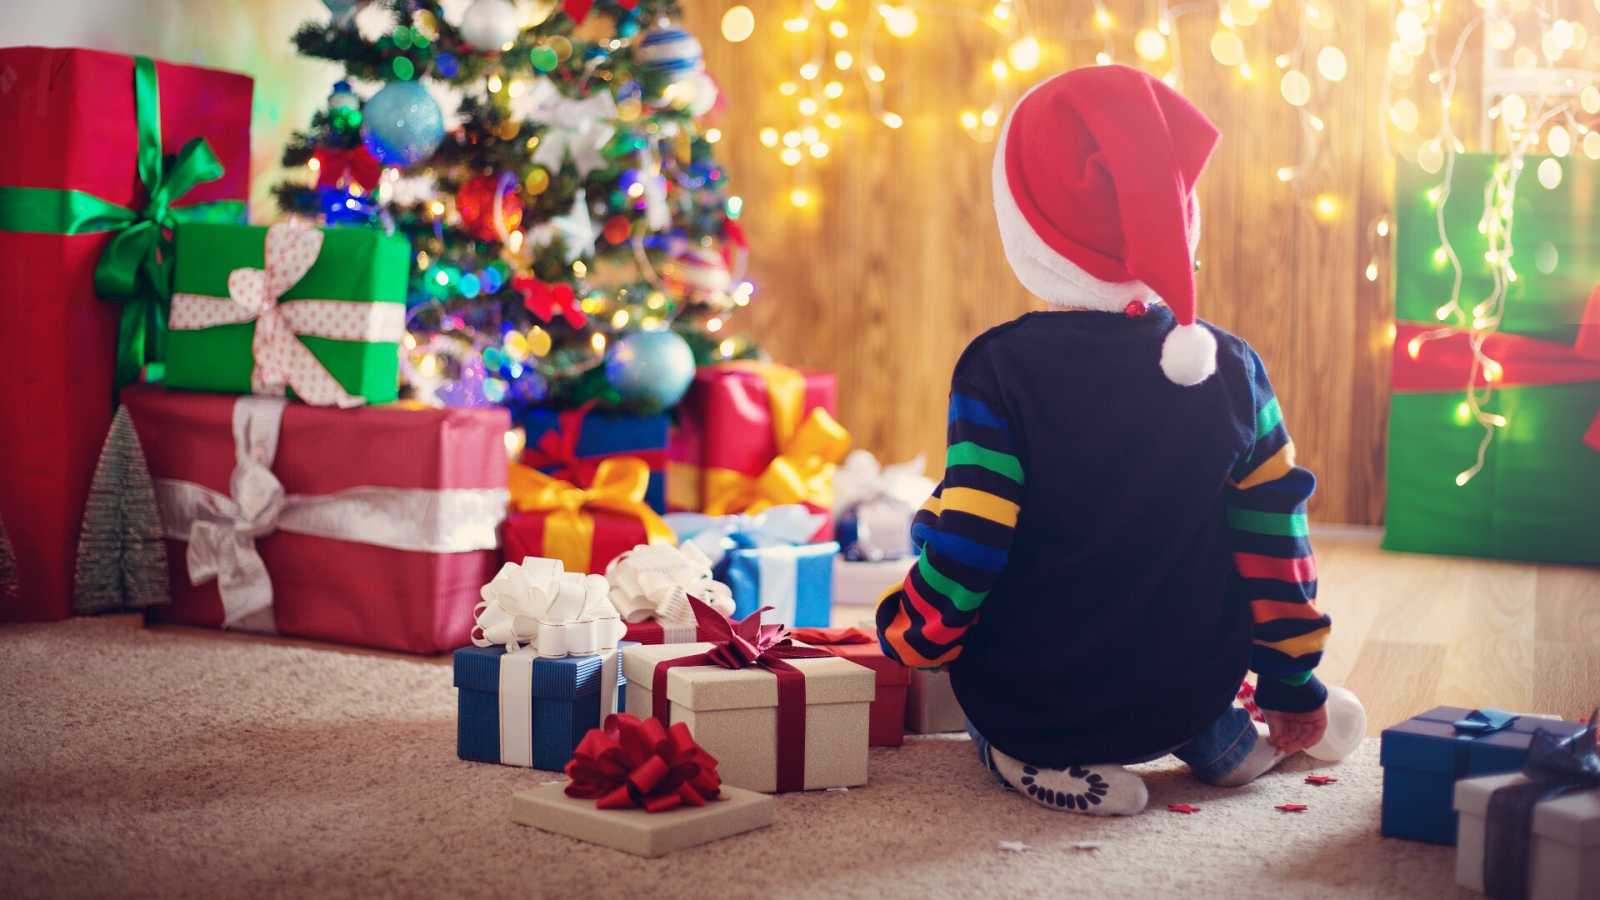 Cómo afecta psicológicamente a los niños el exceso de regalos en Navidad?